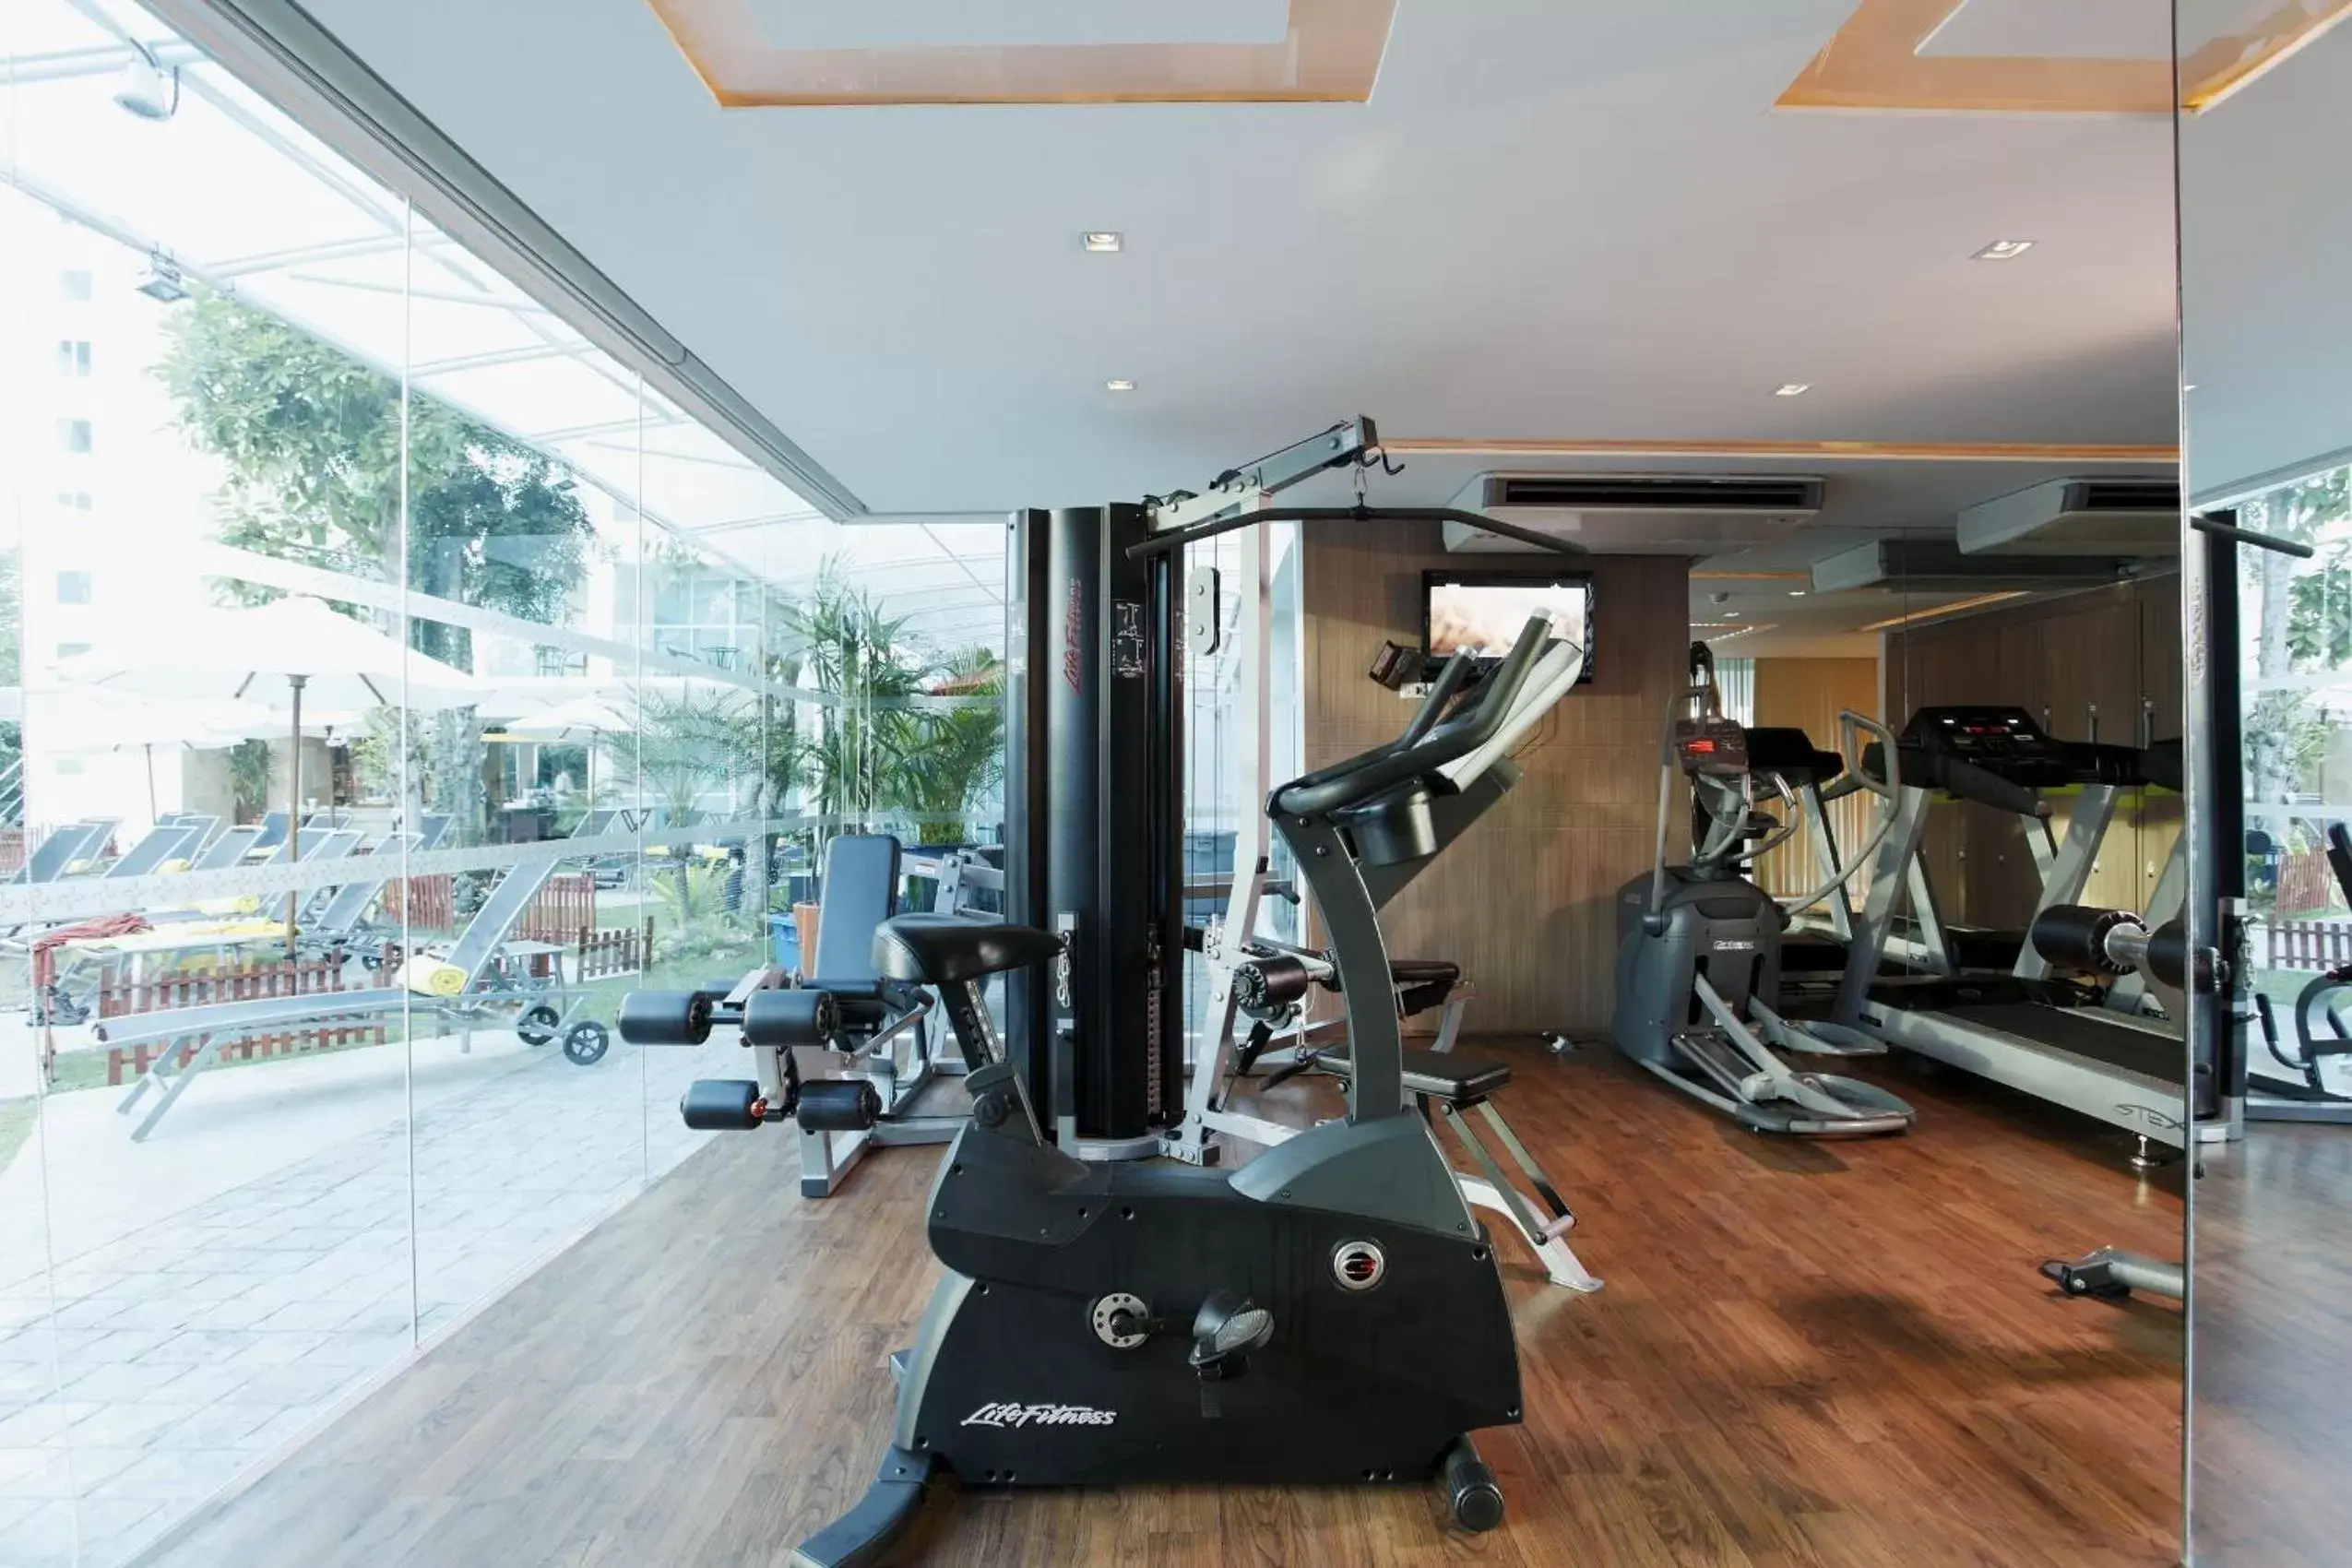 Fitness centre/facilities, Fitness Center/Facilities in Centara Pattaya Hotel